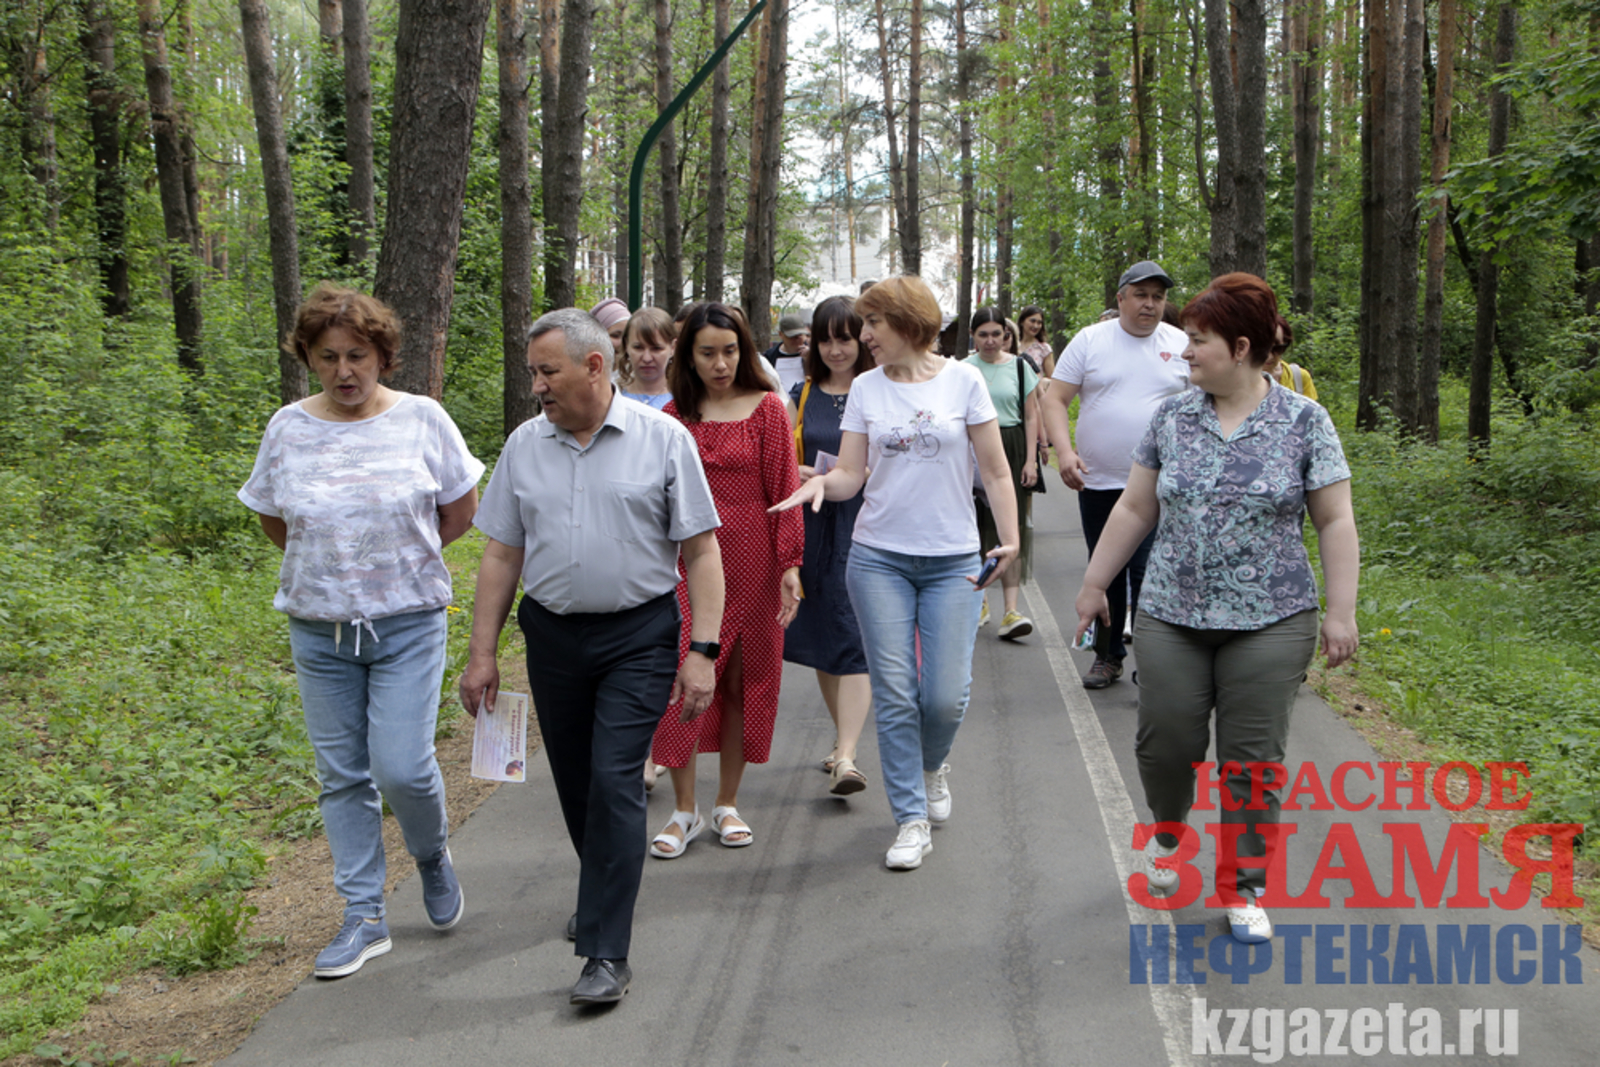 Врачи Нефтекамской городской больницы отвечают на вопросы горожан, прогуливаясь с ними в лесу. Фото: Руслан Никонов, «КЗ».